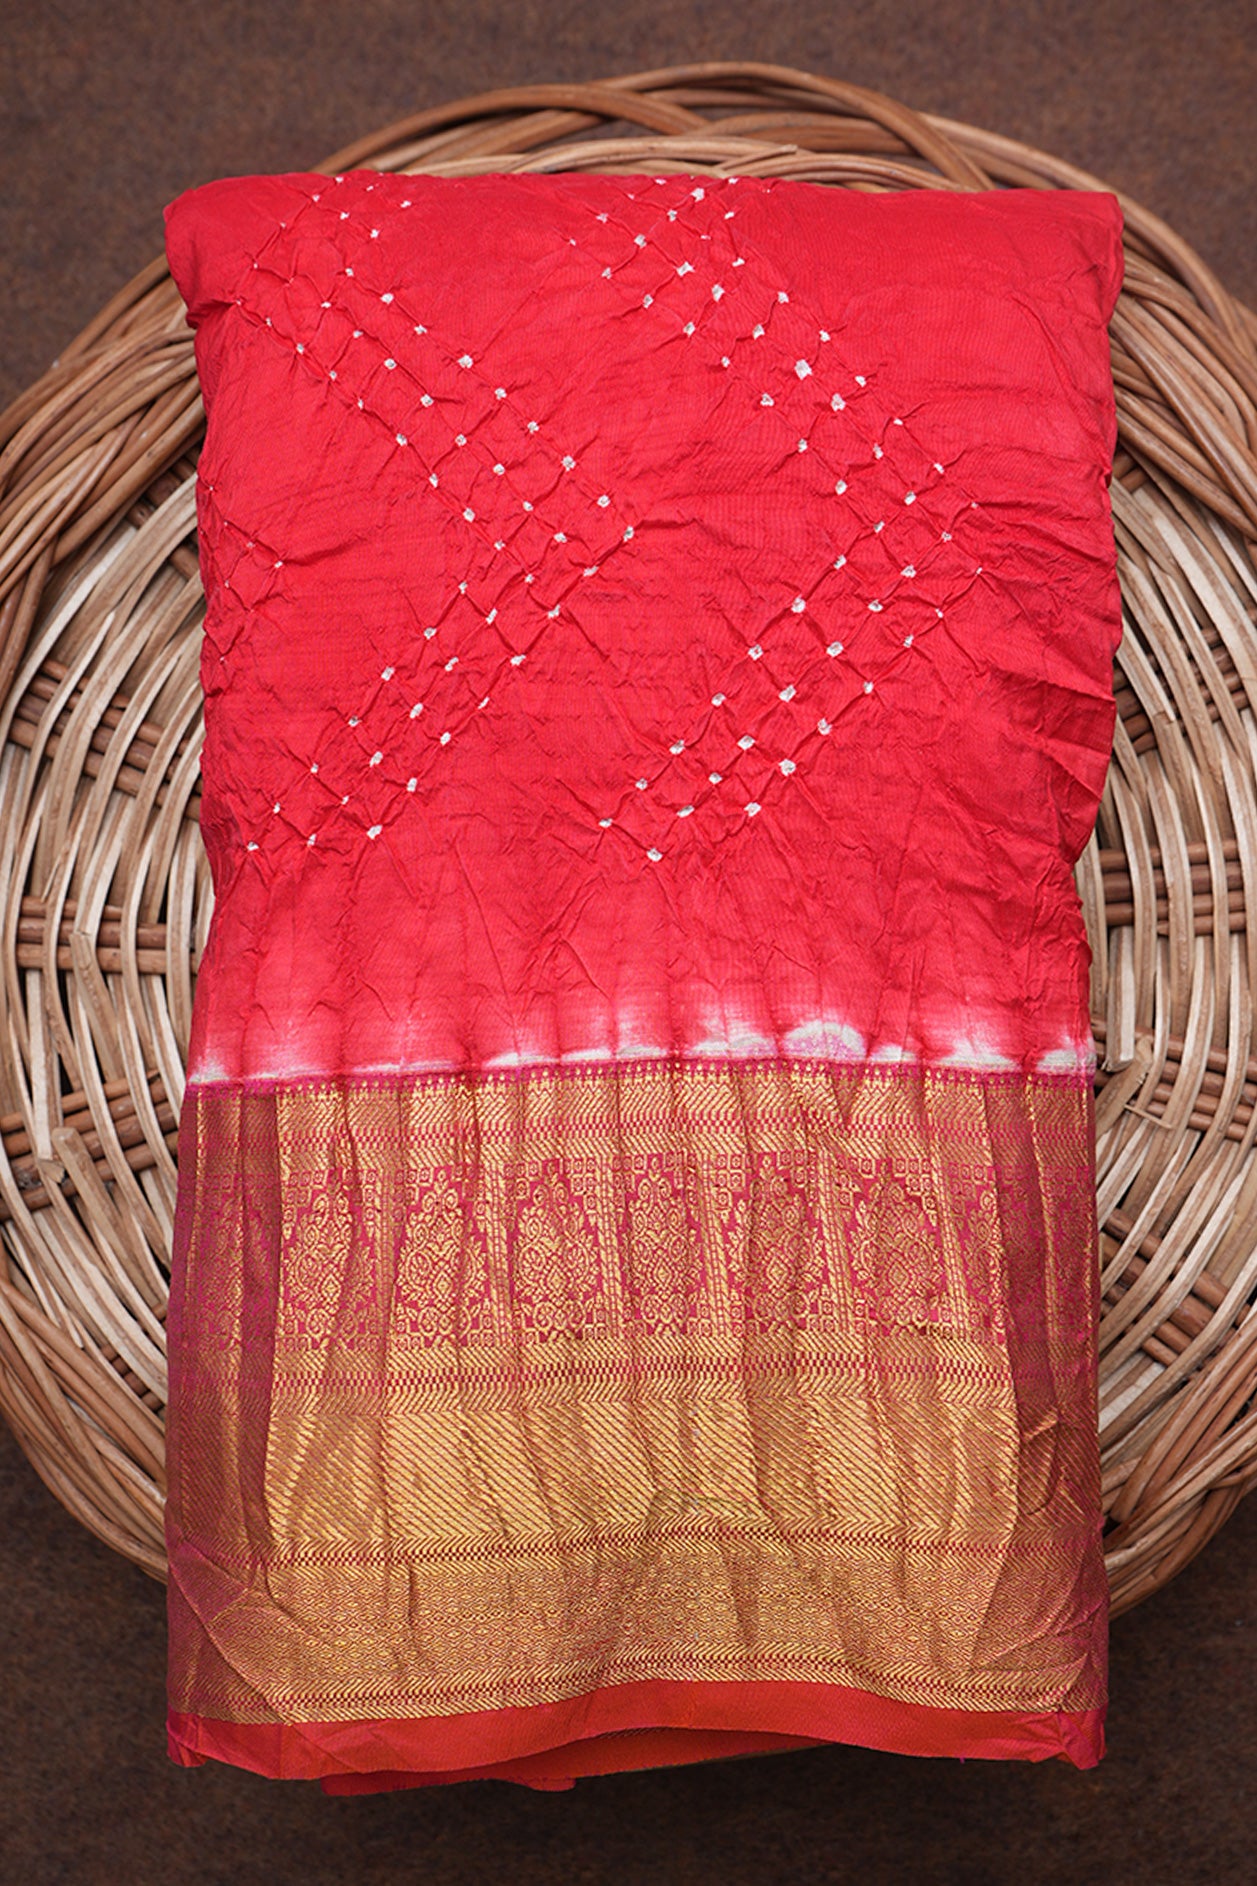 Red Tie in Basket Weave Silk - The Nines